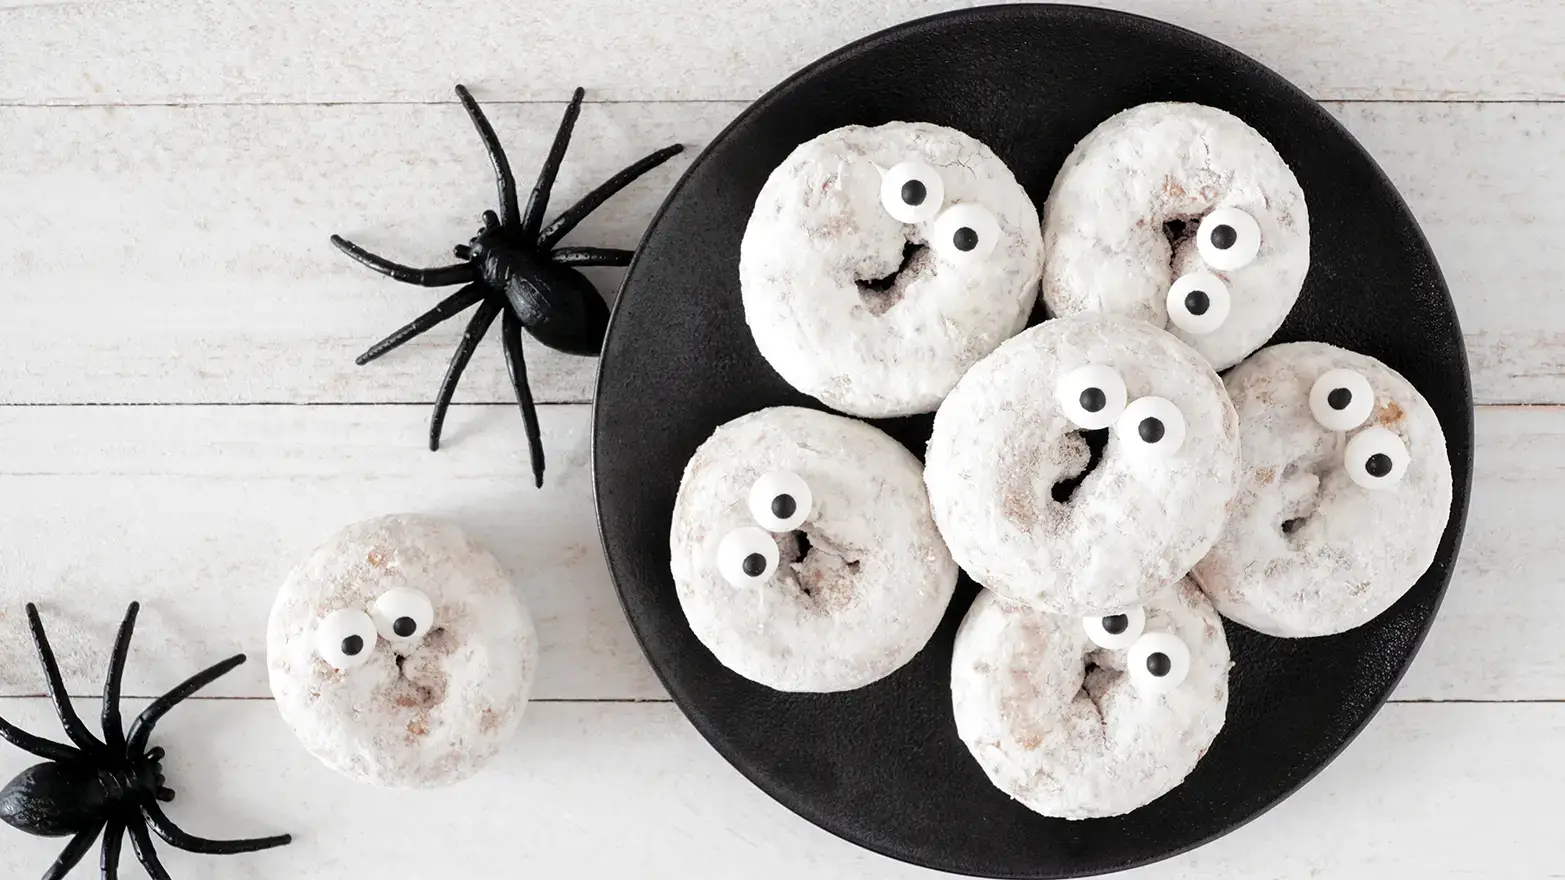 Sugar donuts with google eyes